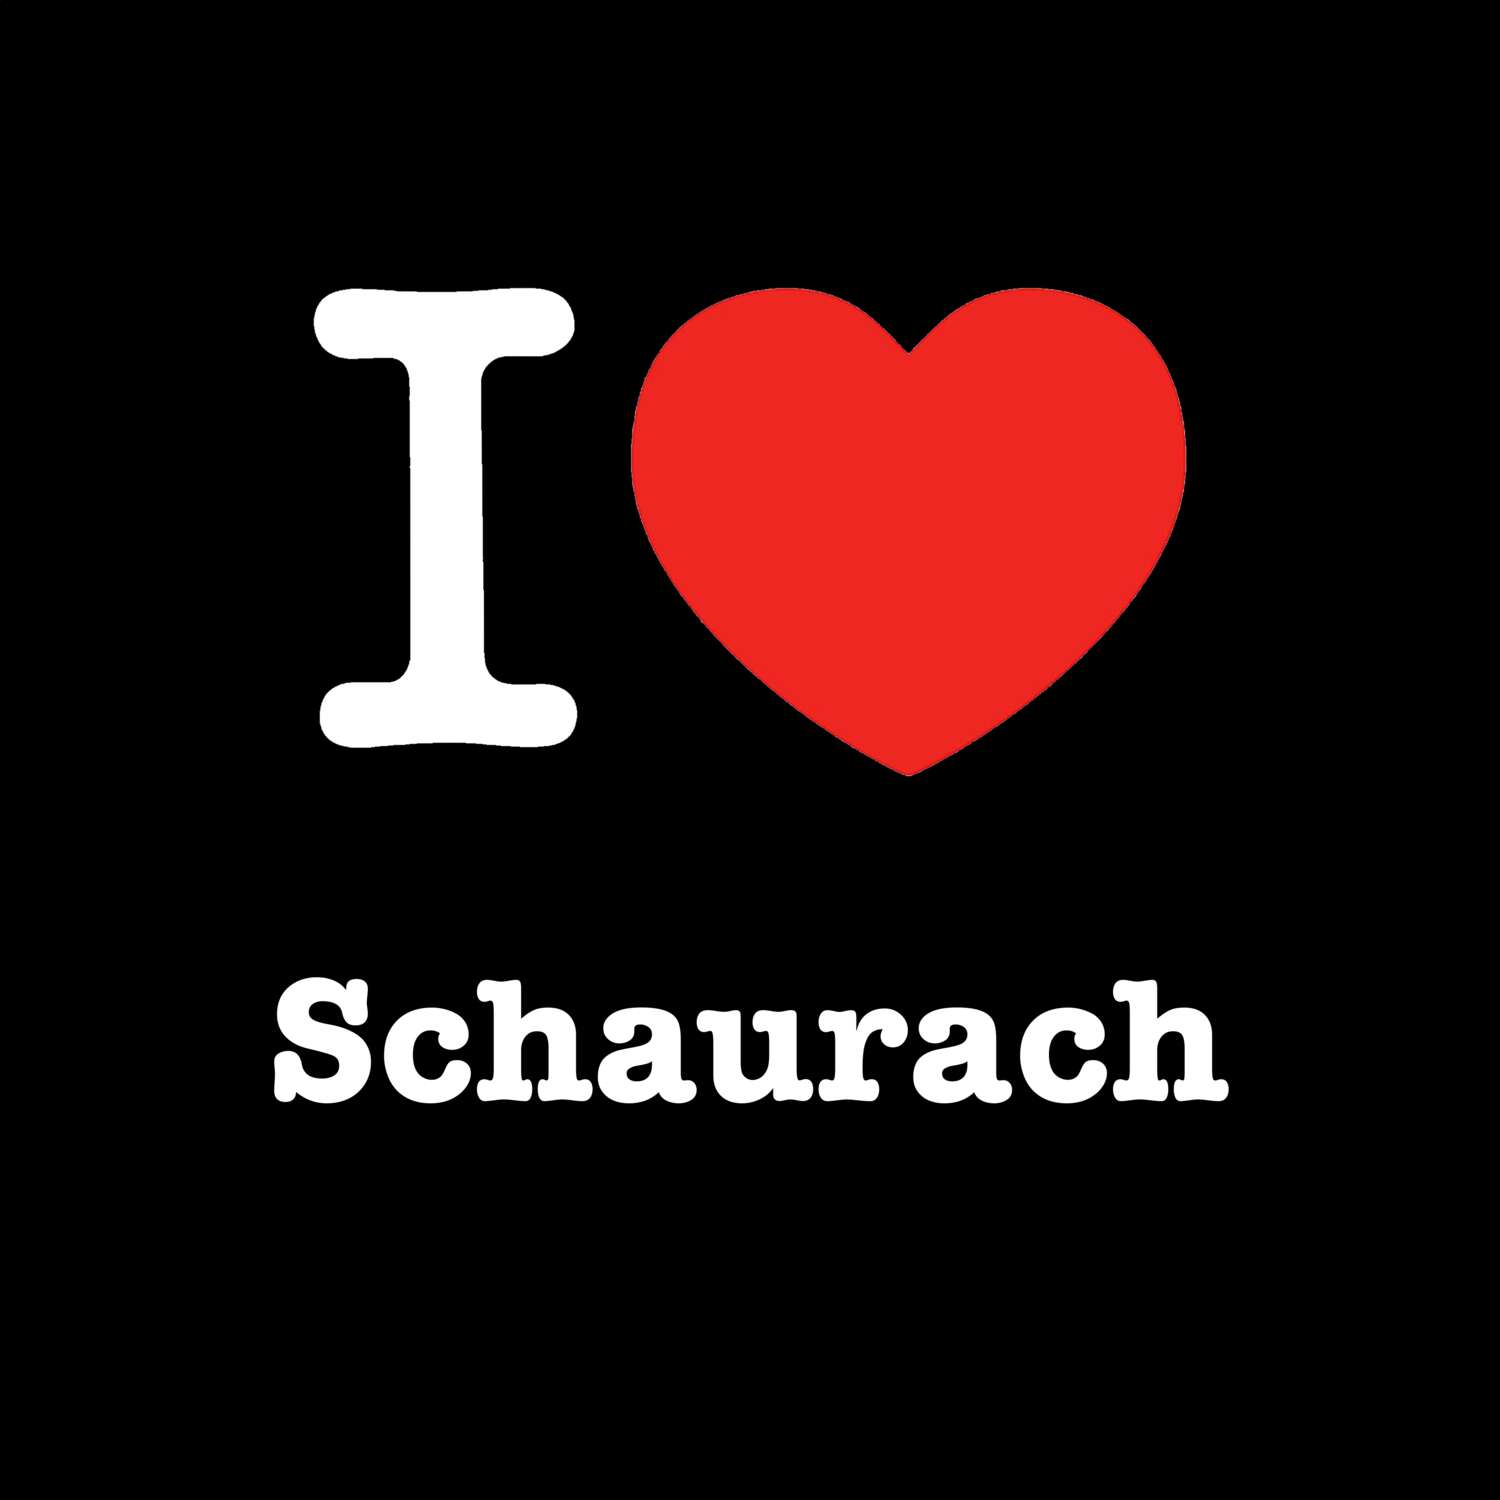 Schaurach T-Shirt »I love«